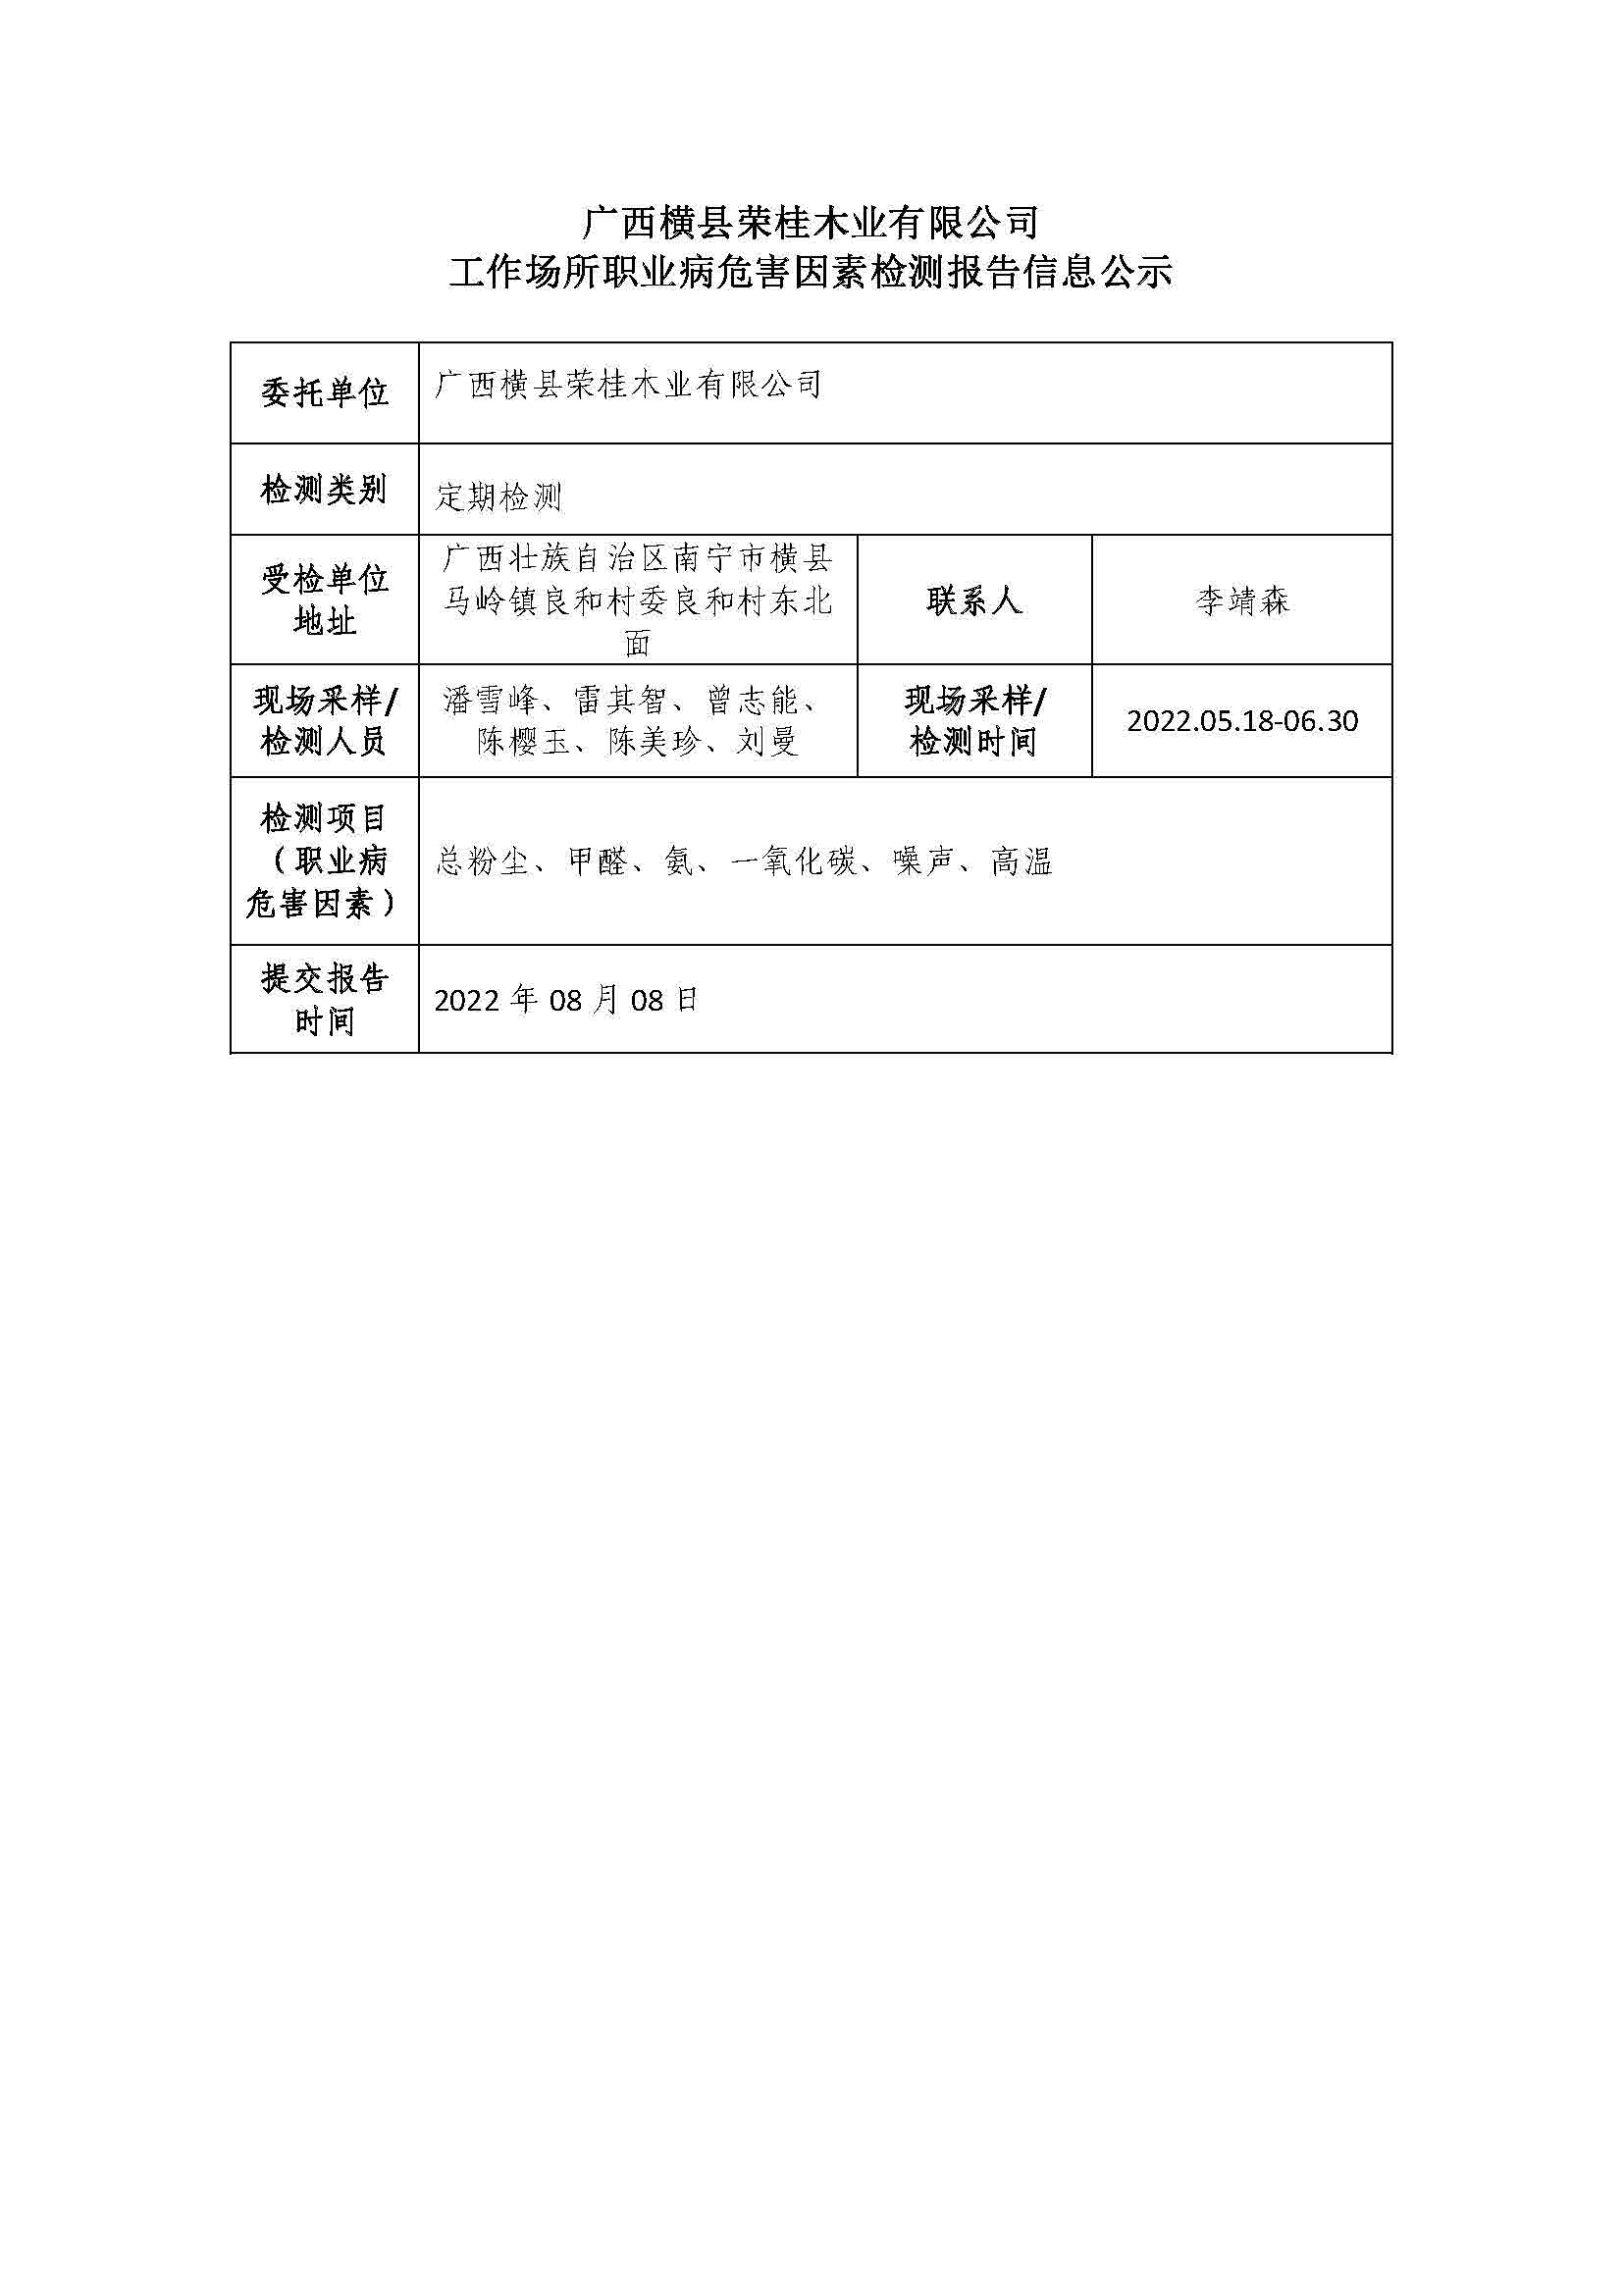 广西横县荣桂木业有限公司工作场所职业病危害因素检测报告信息公示